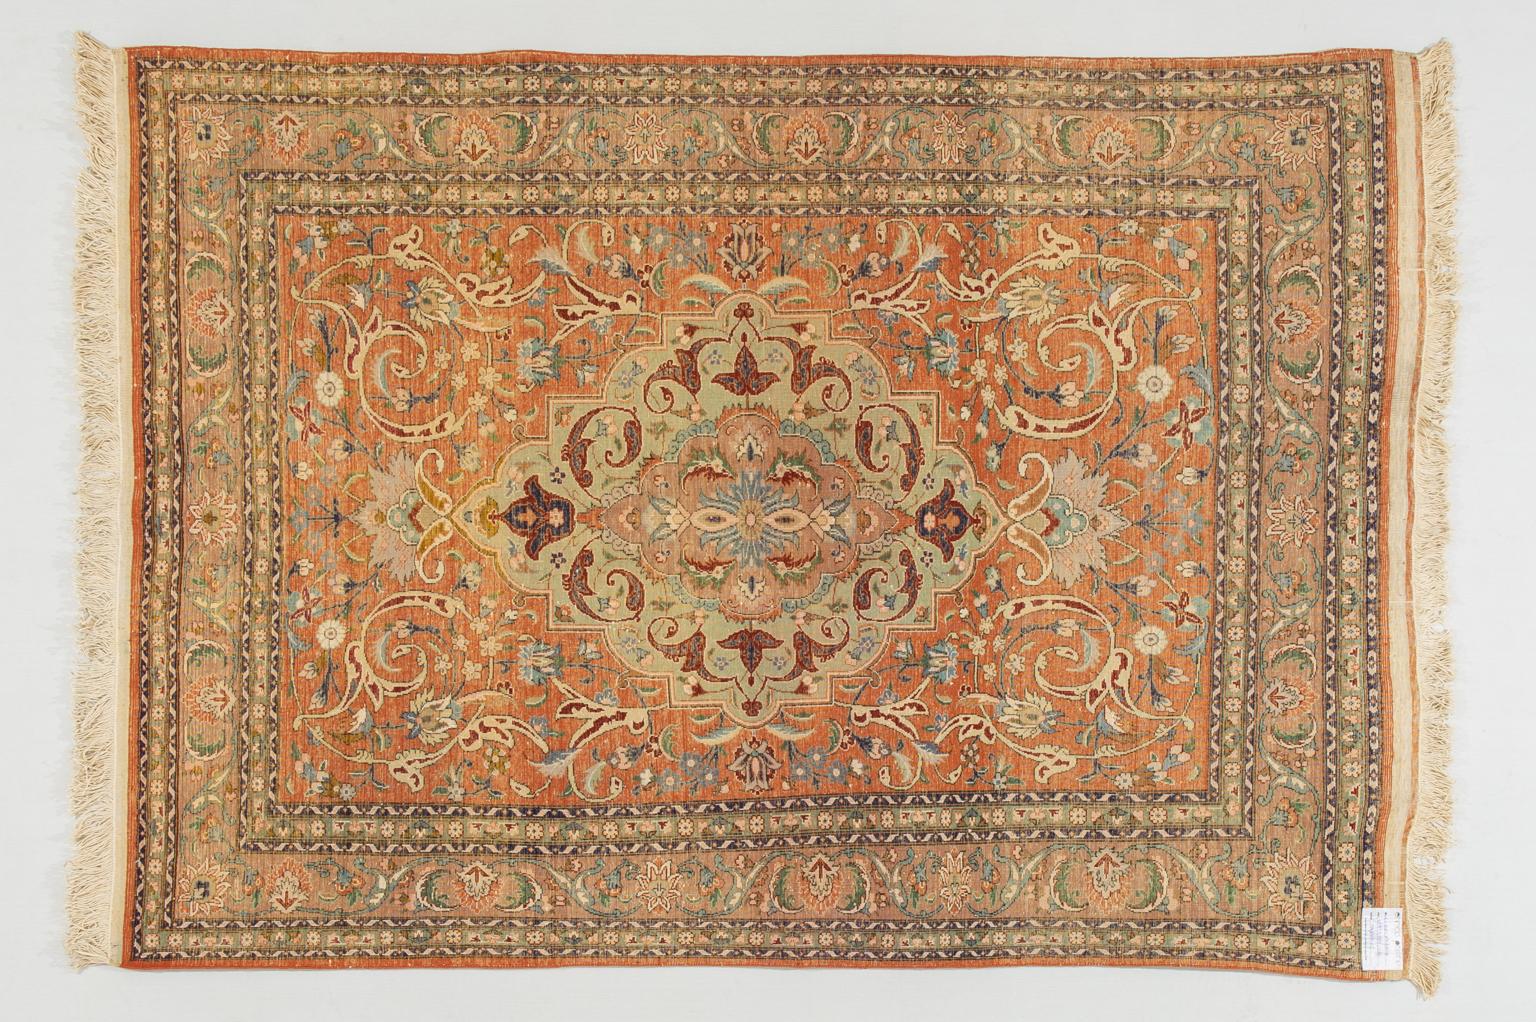 Other Unique Specimen of a Vintage Oriental Carpet For Sale